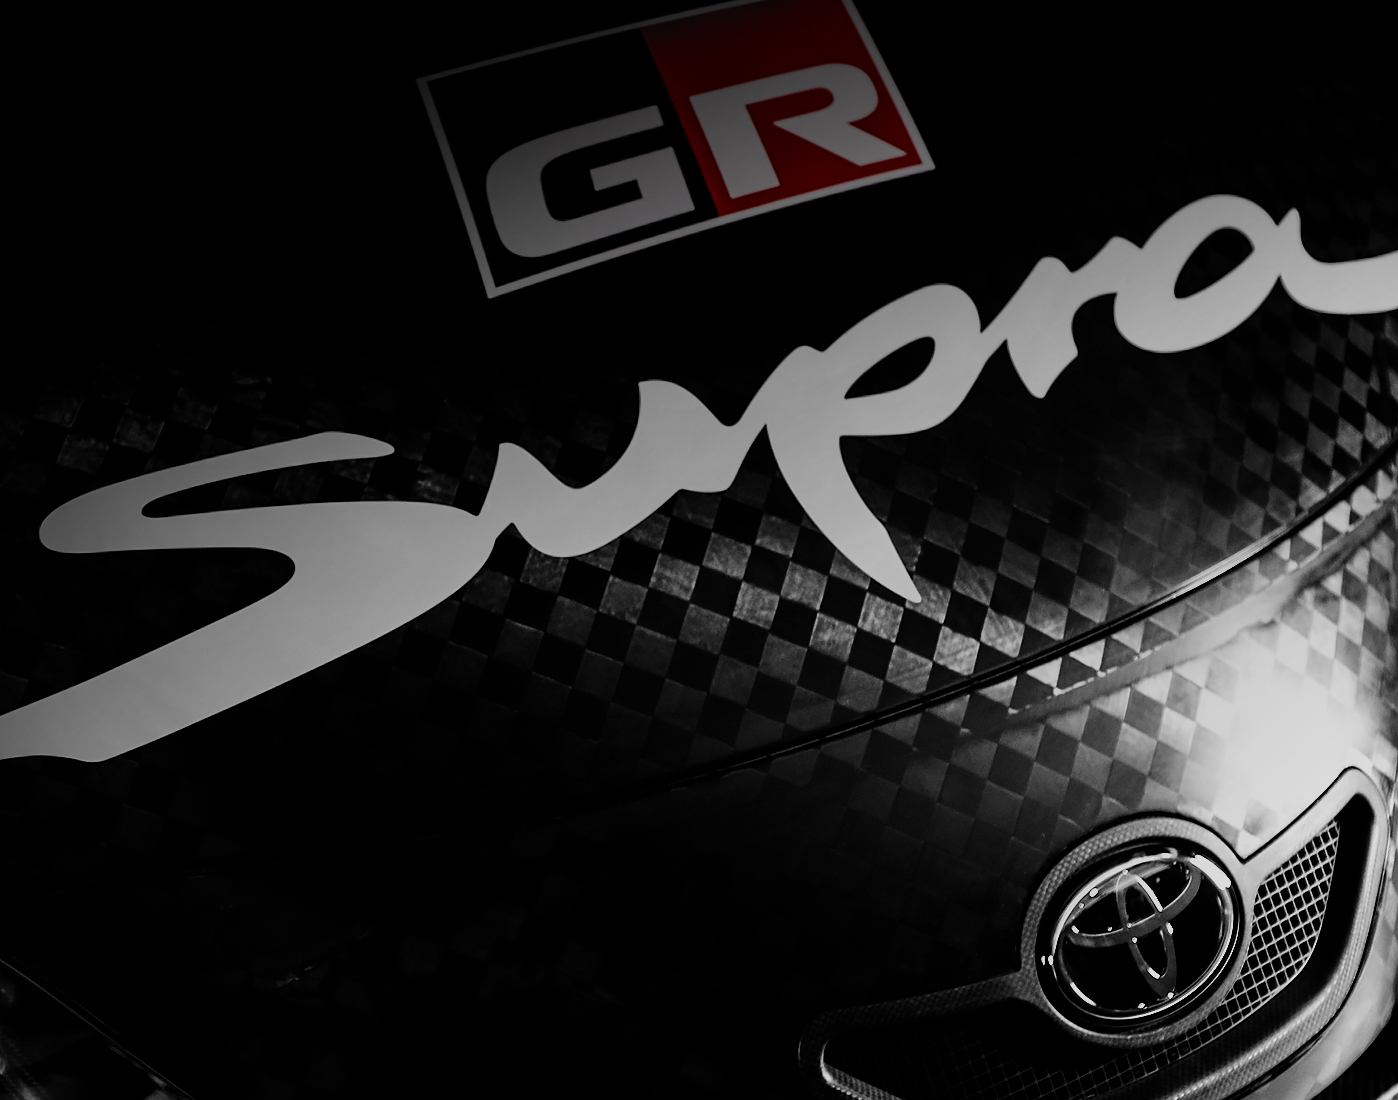 Gr Supra Gt500 Super Gt 2020年新型車両 2019年 Super Gt Toyota Gazoo Racing